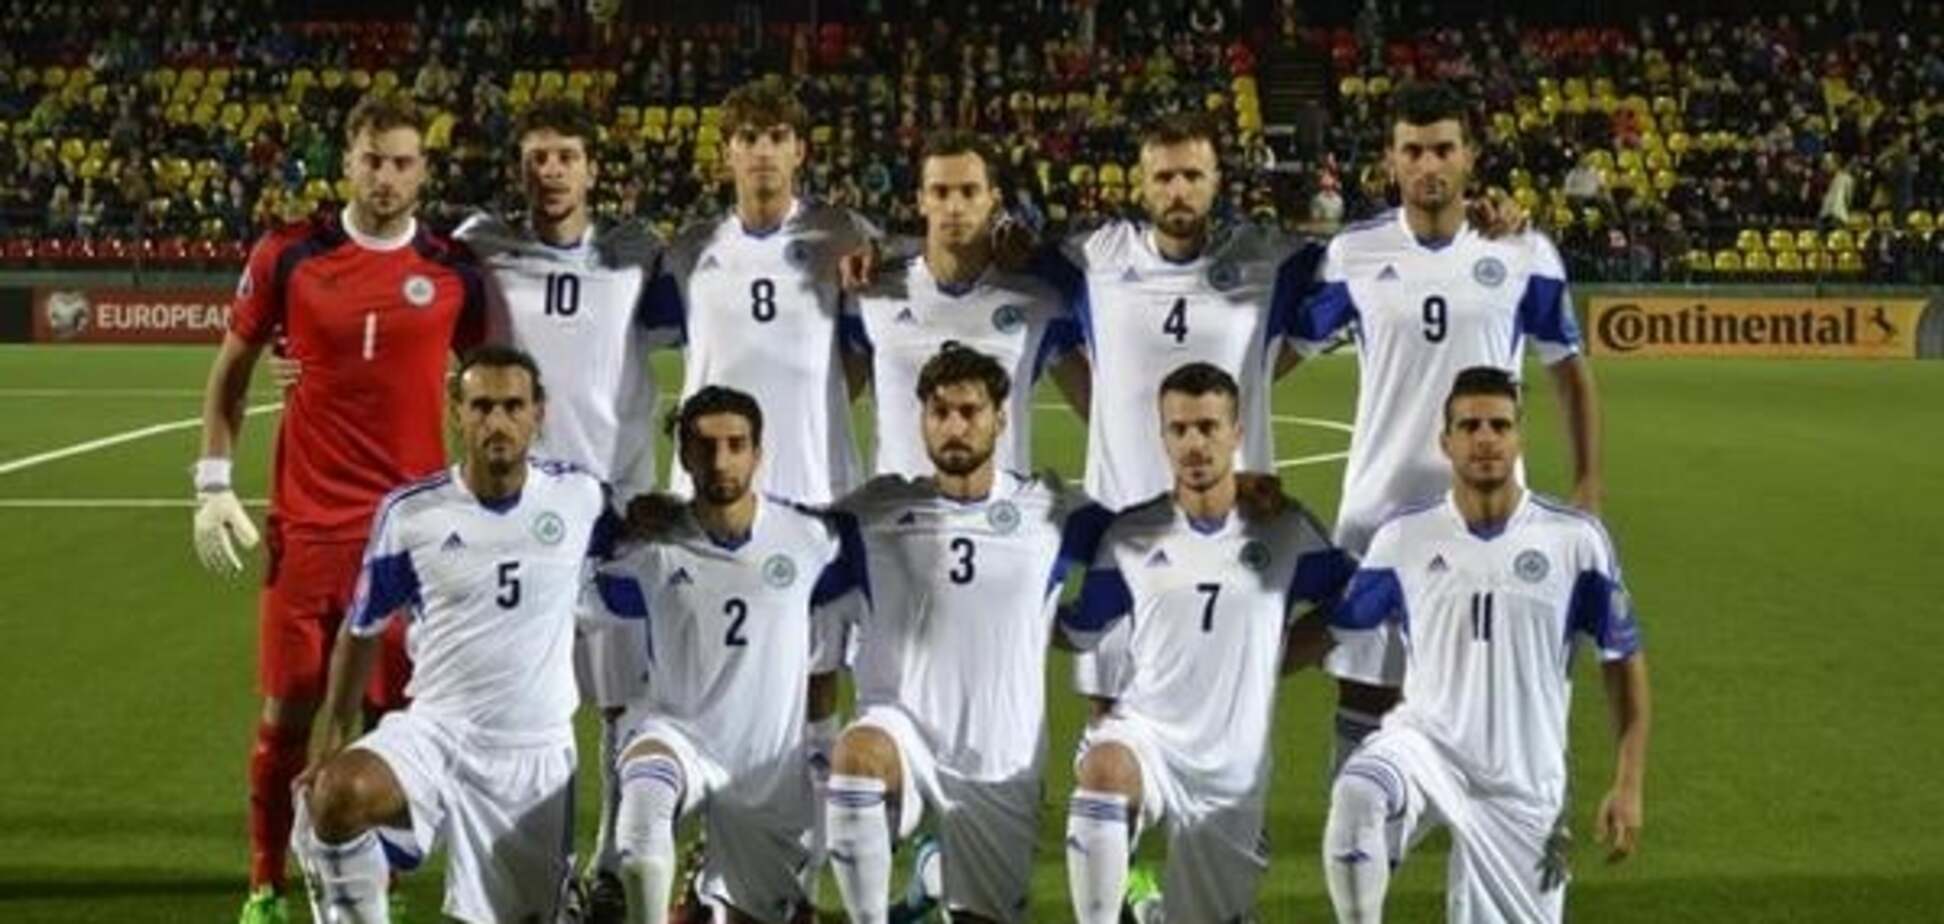 'За 9 минут забил больше, чем мы за всю историю': европейская сборная потроллила свои успехи